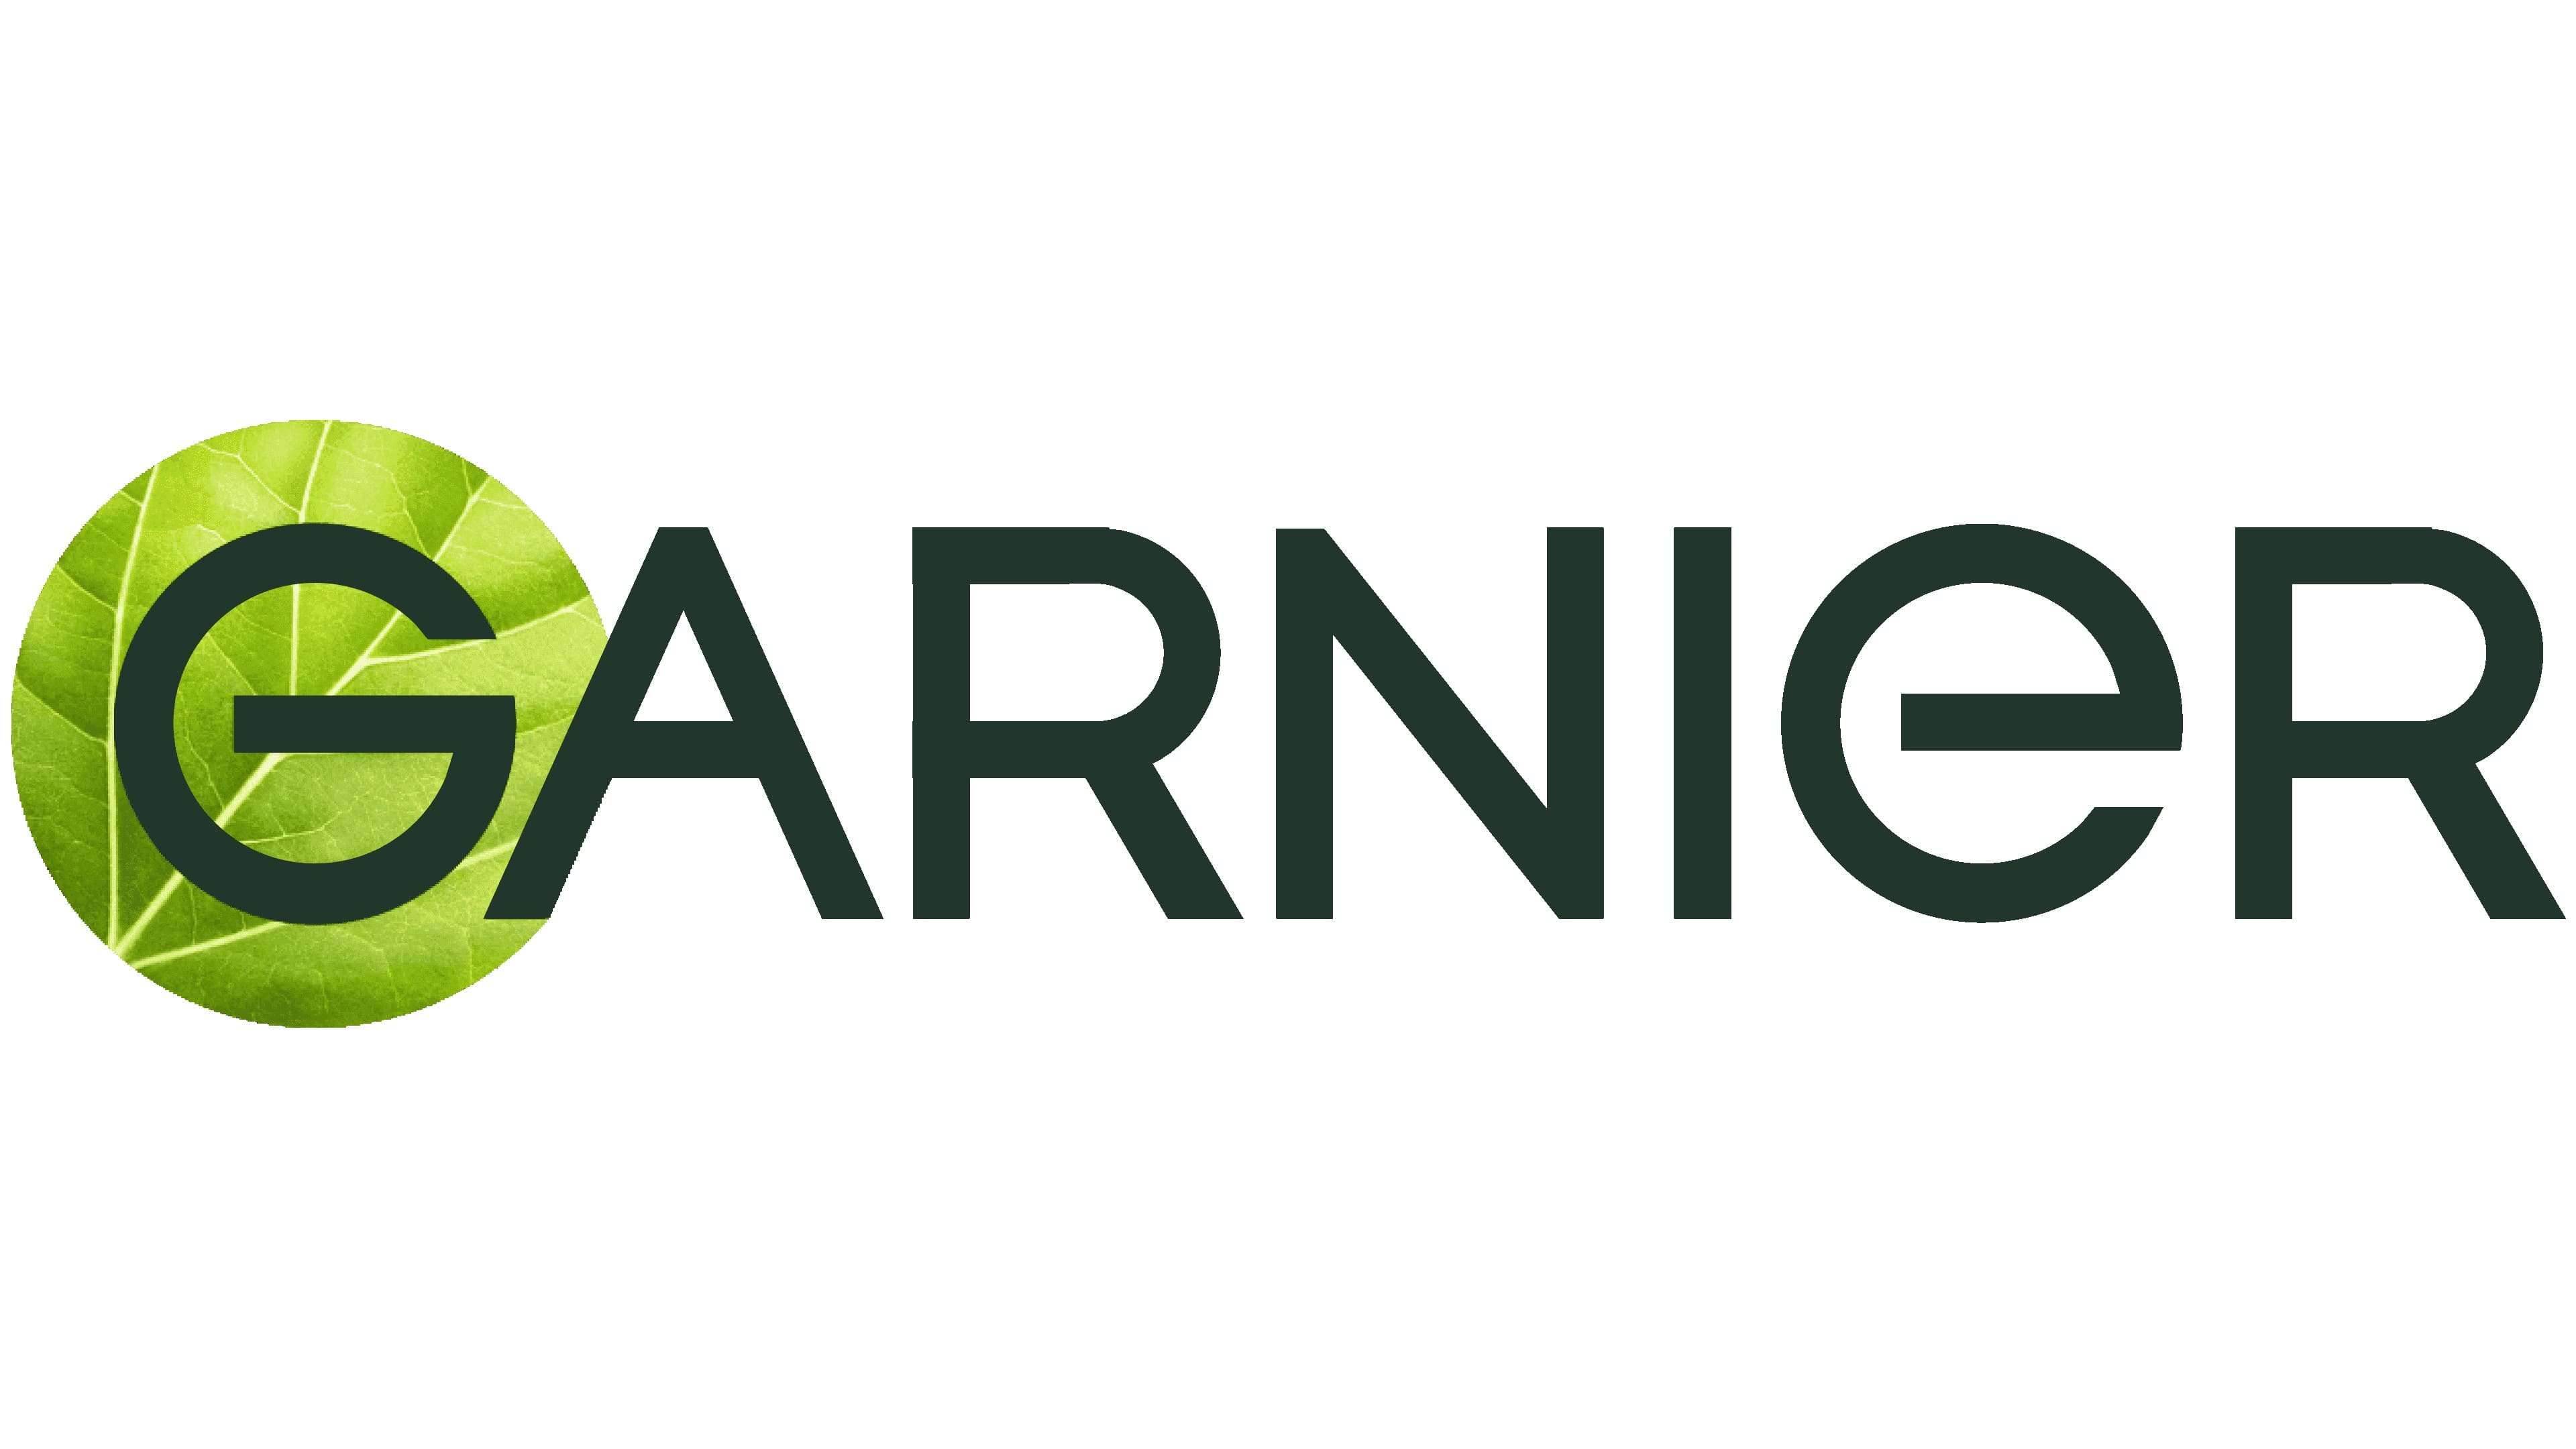 Mẫu thiết kế logo thương hiệu công ty Garnier 10